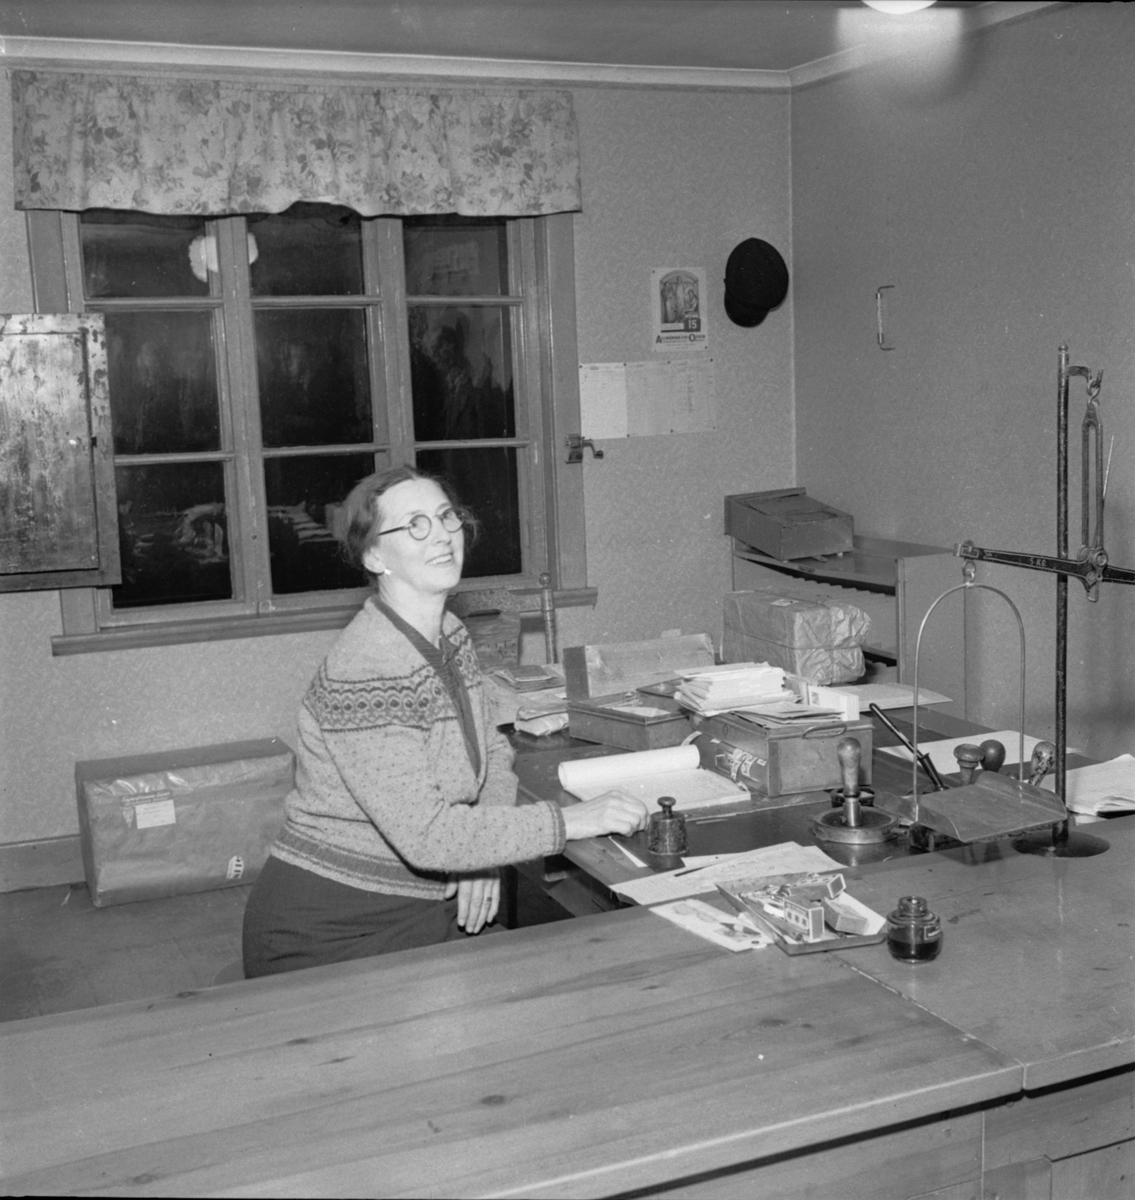 "Rån på posten i Viksta", Uppsala 1948